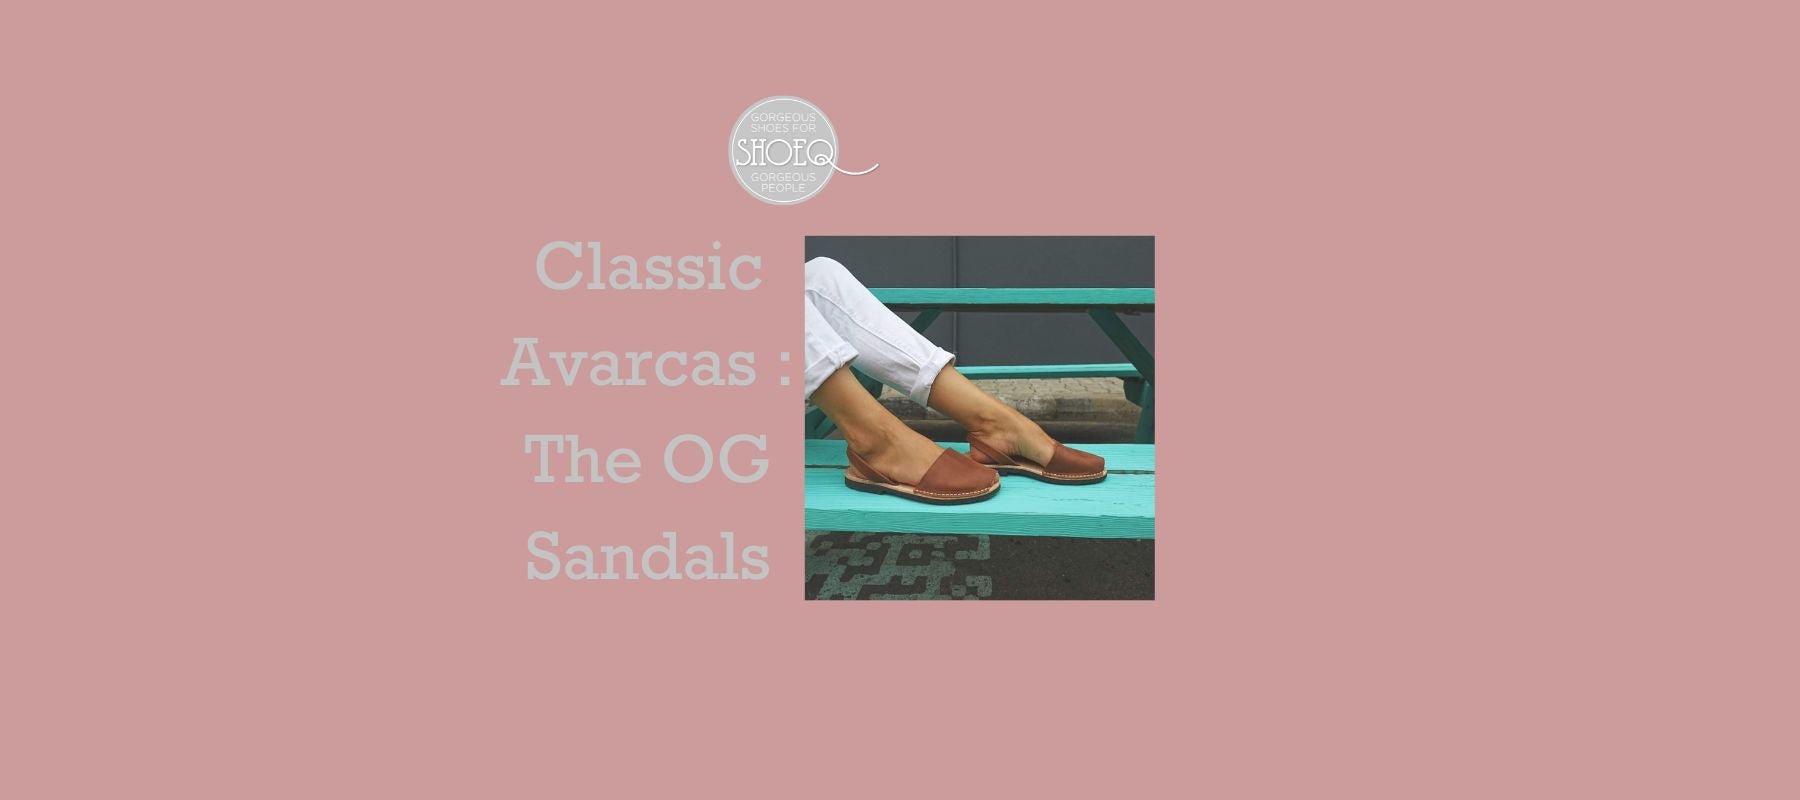 Classic Avarcas: The OG sandals - Shoeq